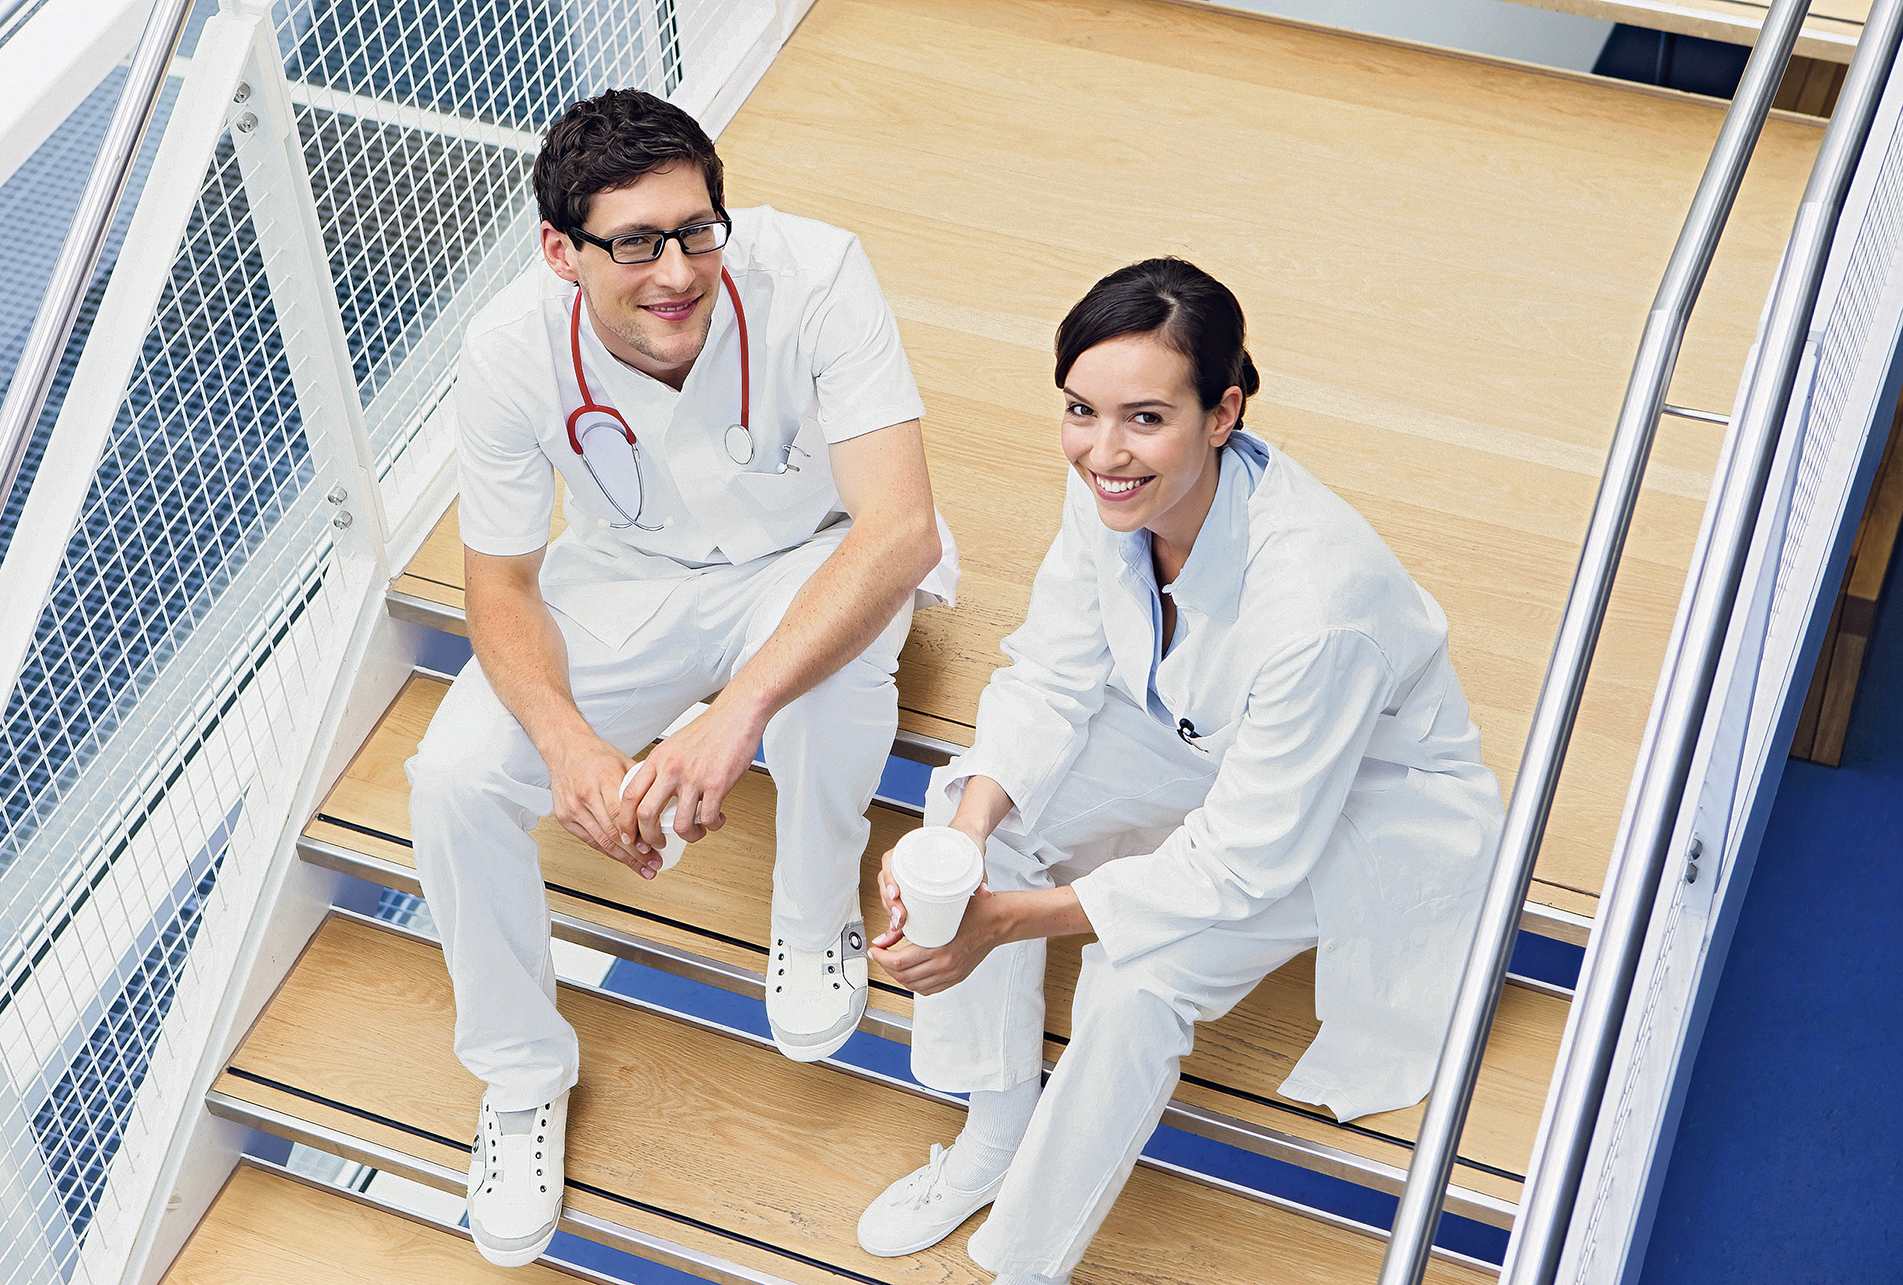 Startbild: Foto von einem jungen Arzt und einer jugen Ärztin, die auf der Treppe eines Krankenhauses sitzen